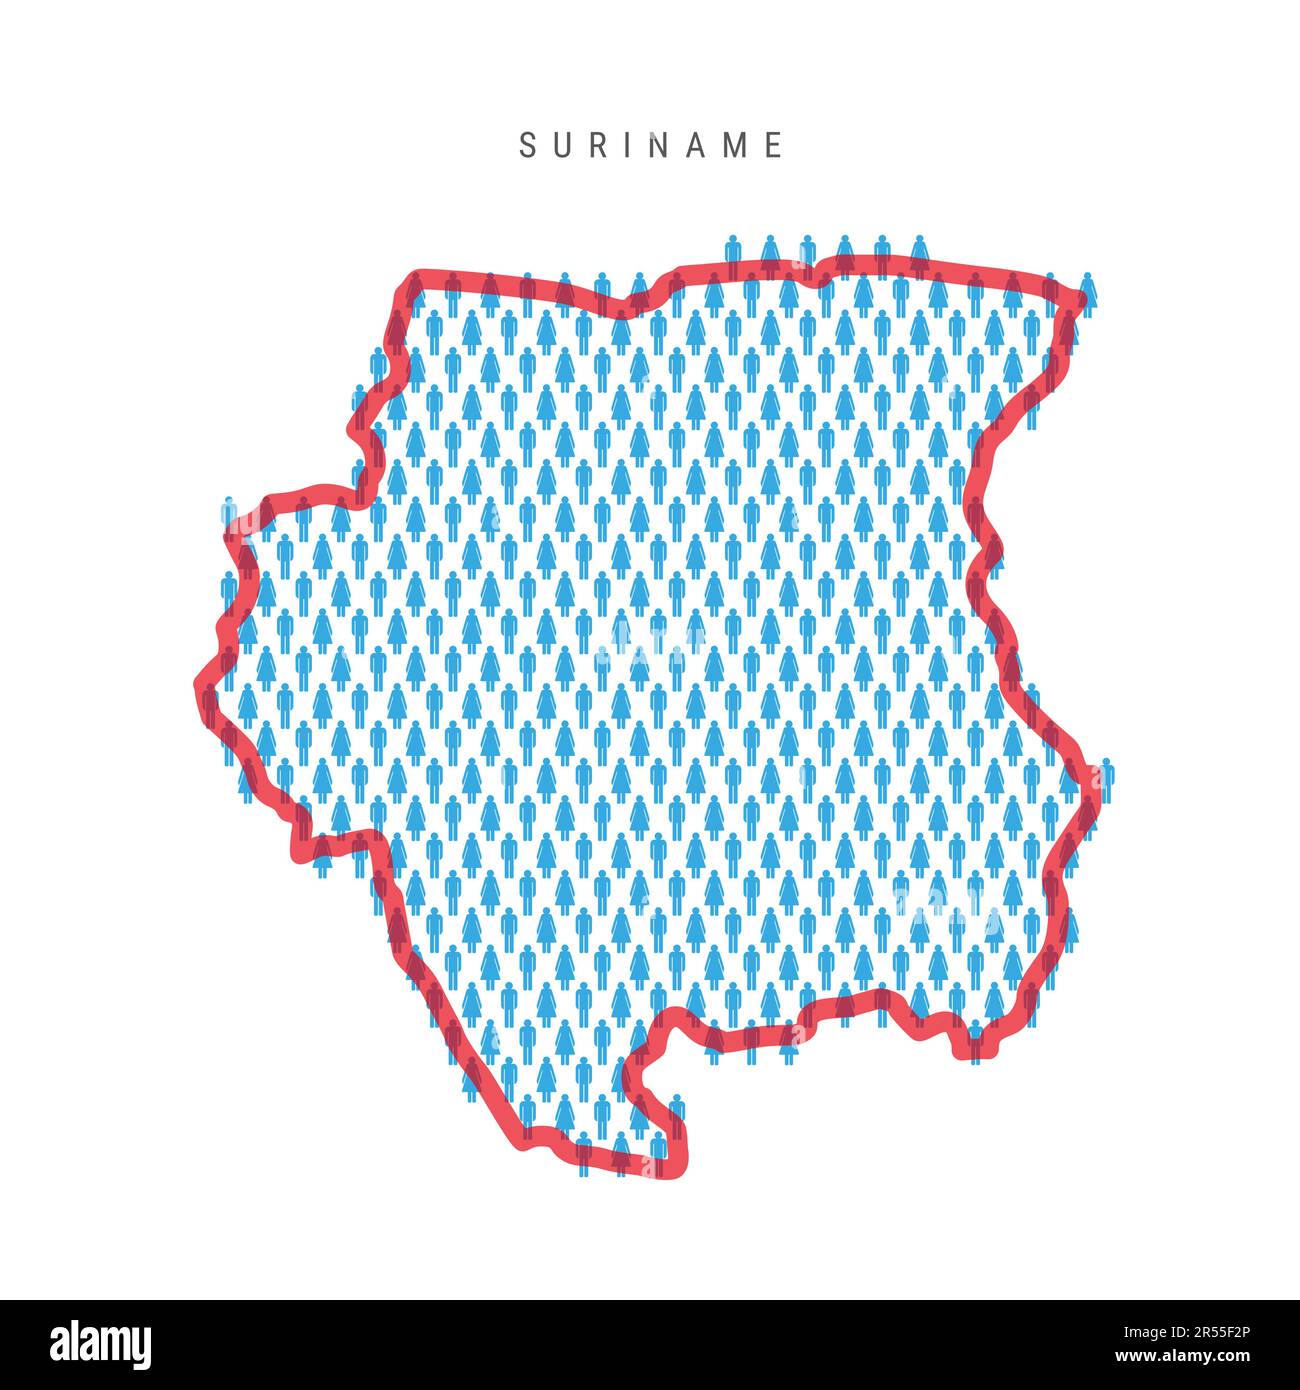 Suriname-Populationskarte. Strichfiguren Suriname Karte mit auffälliger roter, durchsichtiger Landesgrenze. Muster von Männer- und Frauensymbolen. Isolierter Vektor Stock Vektor